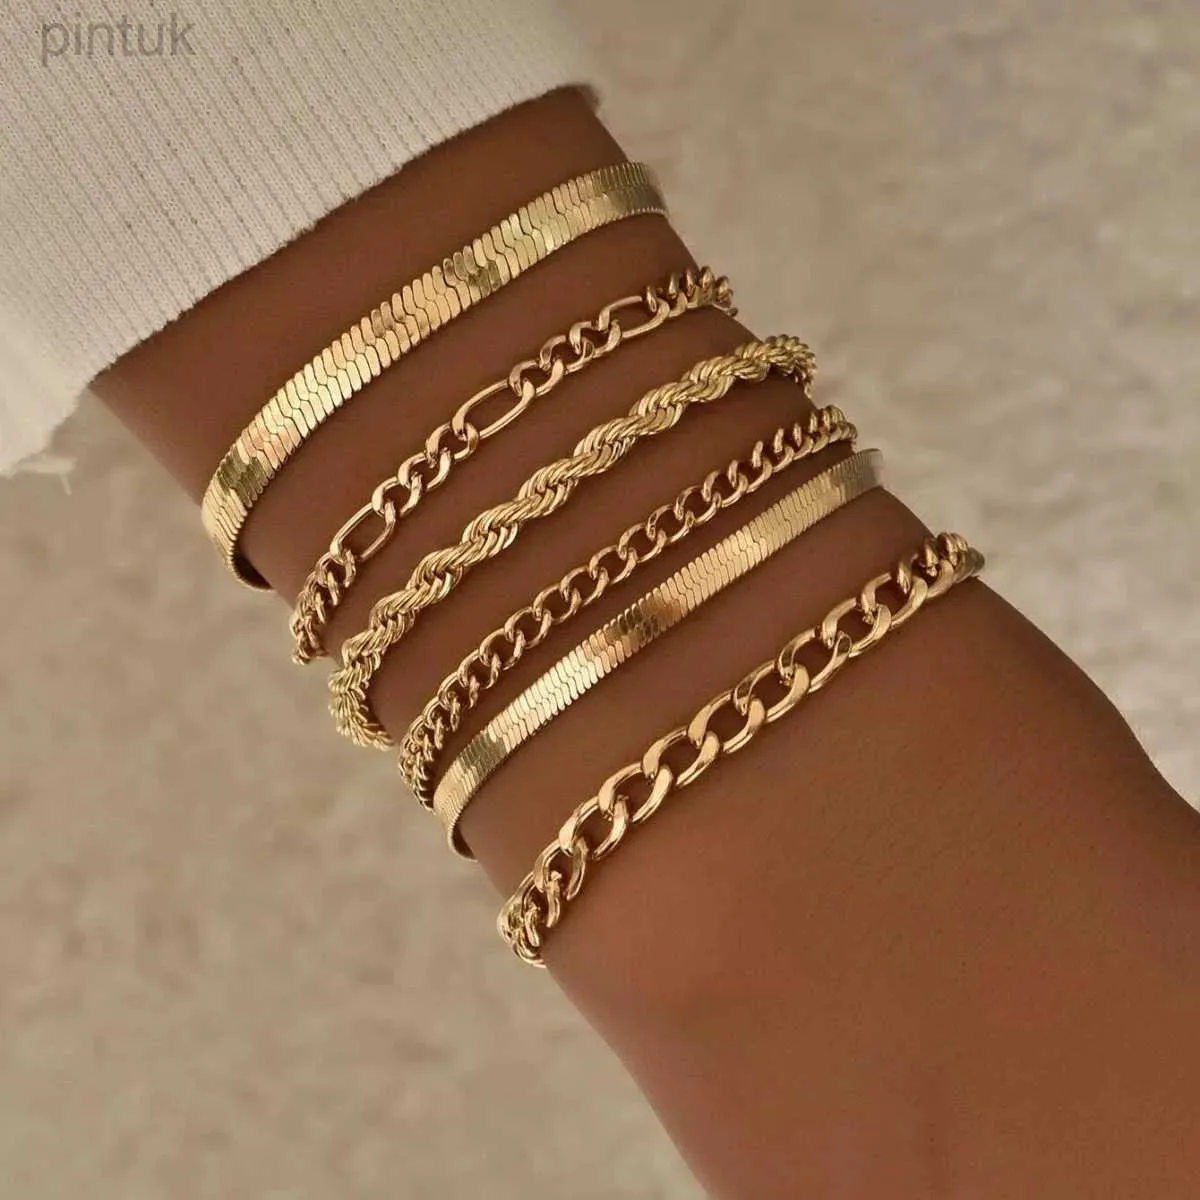 Chain 6Pcs/Set Fashion Thick Chain Link Bracelets Set For Women Gold Color Silver Color Metal Snake Chain Twist Bracelet Punk Jewelry d240419